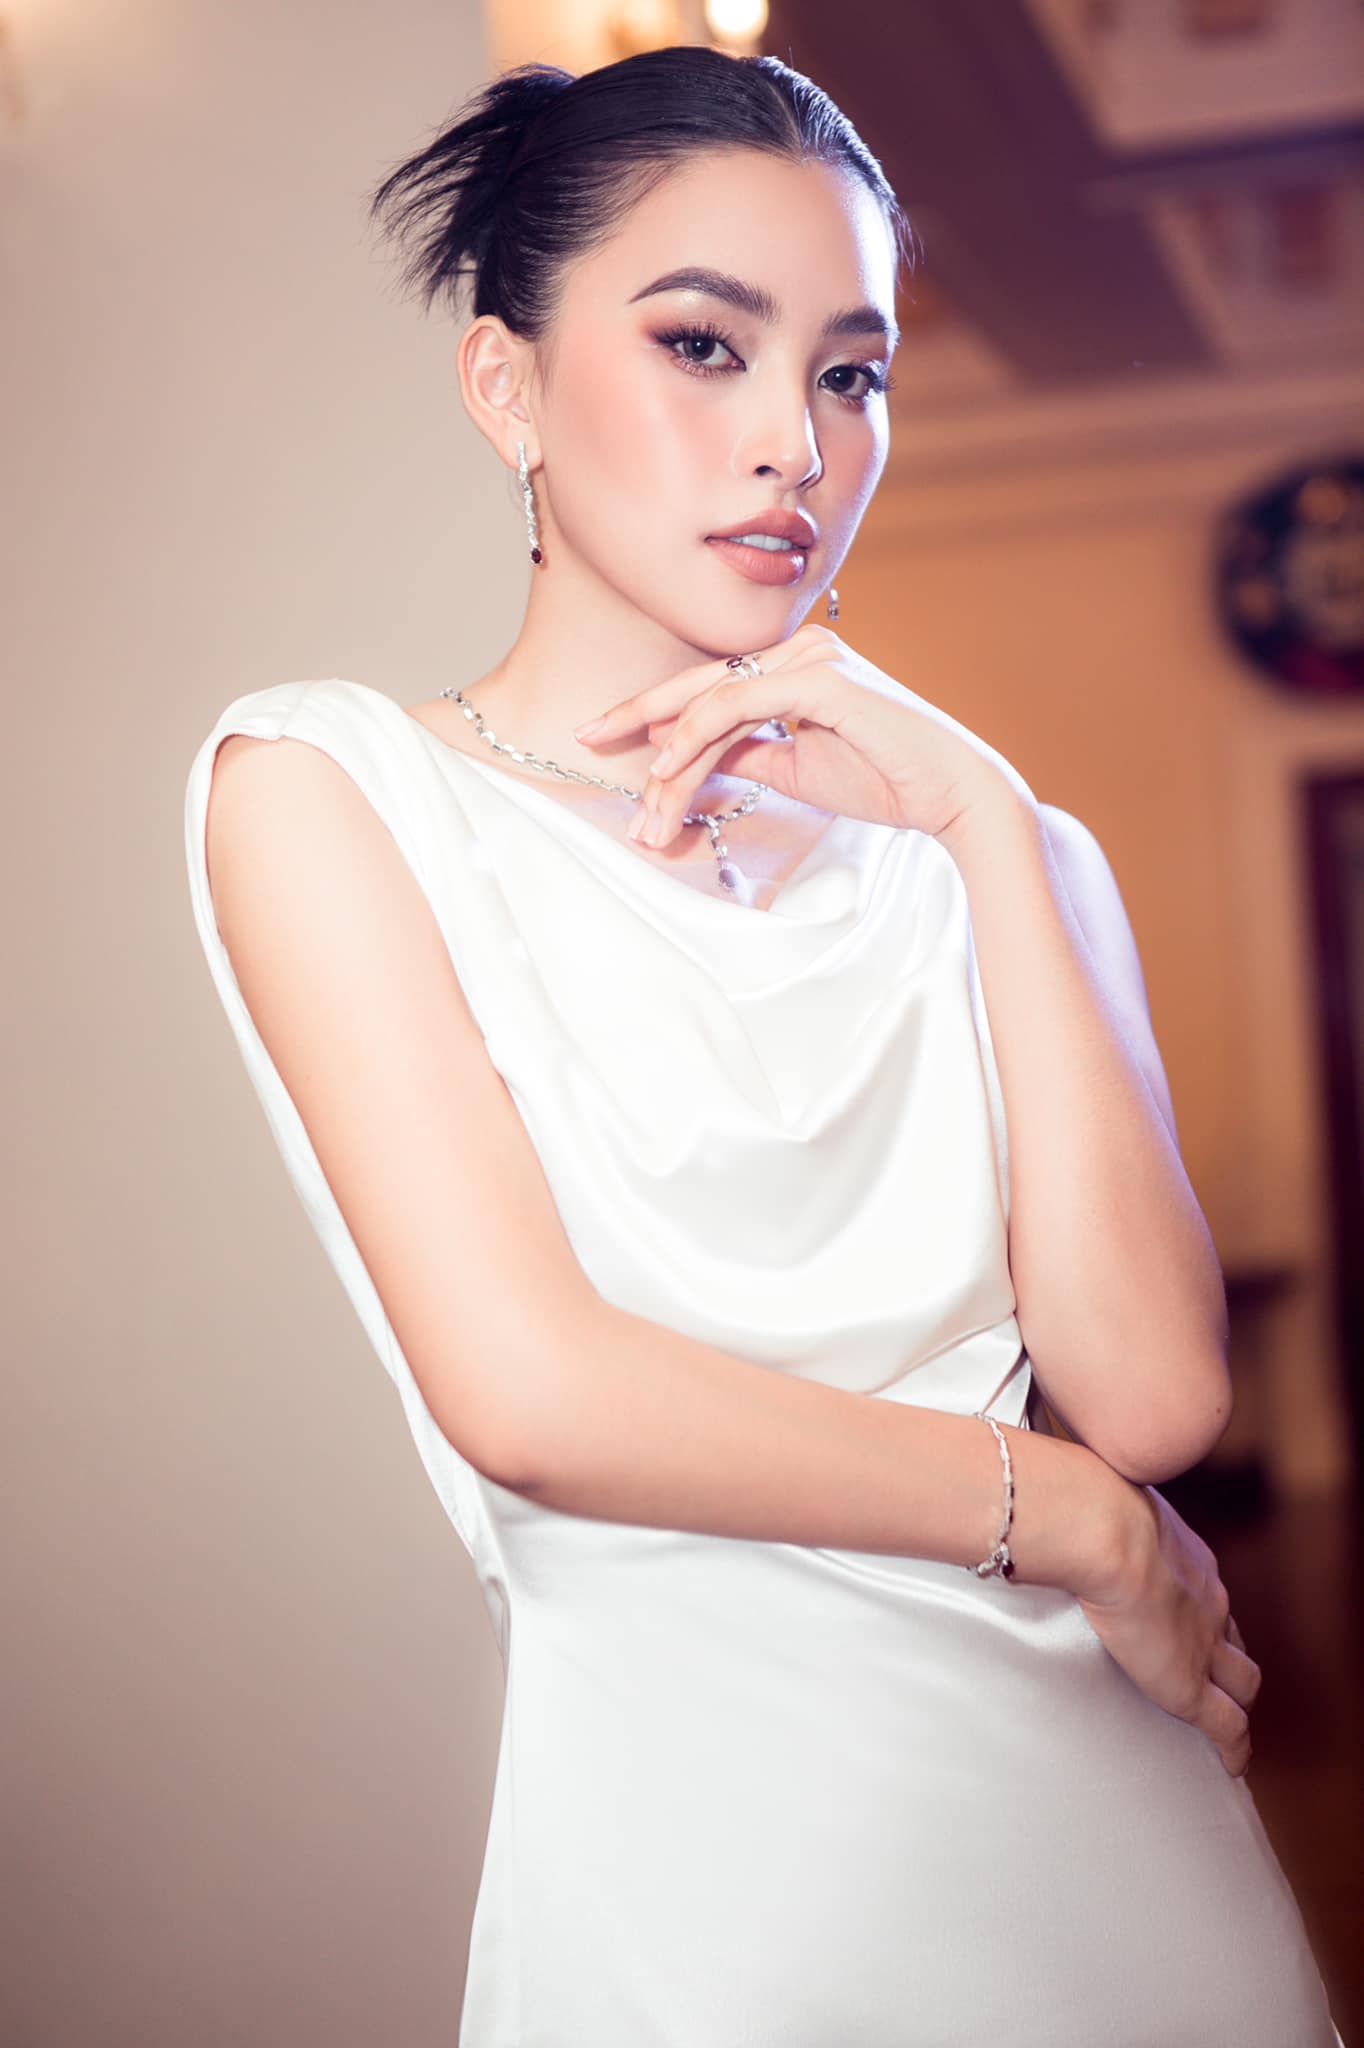 Hoa hậu Trần Tiểu Vy mắc Covid-19 khiến fan lo lắng - Ảnh 1.